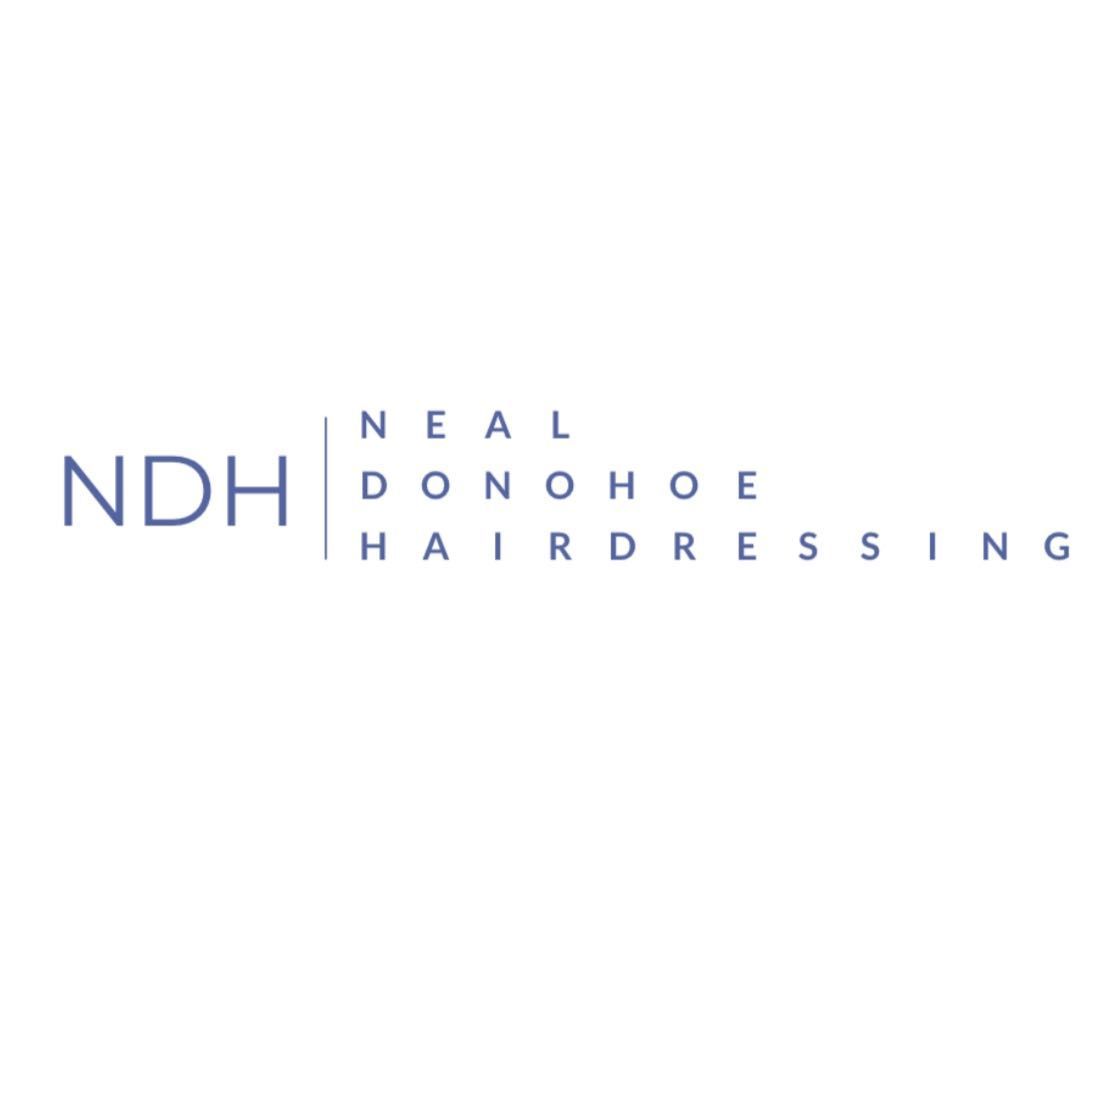 Neal Donohoe Hairdressing, 5 Oakroyd Crescent, Grimethorpe, S72 7NY, Barnsley